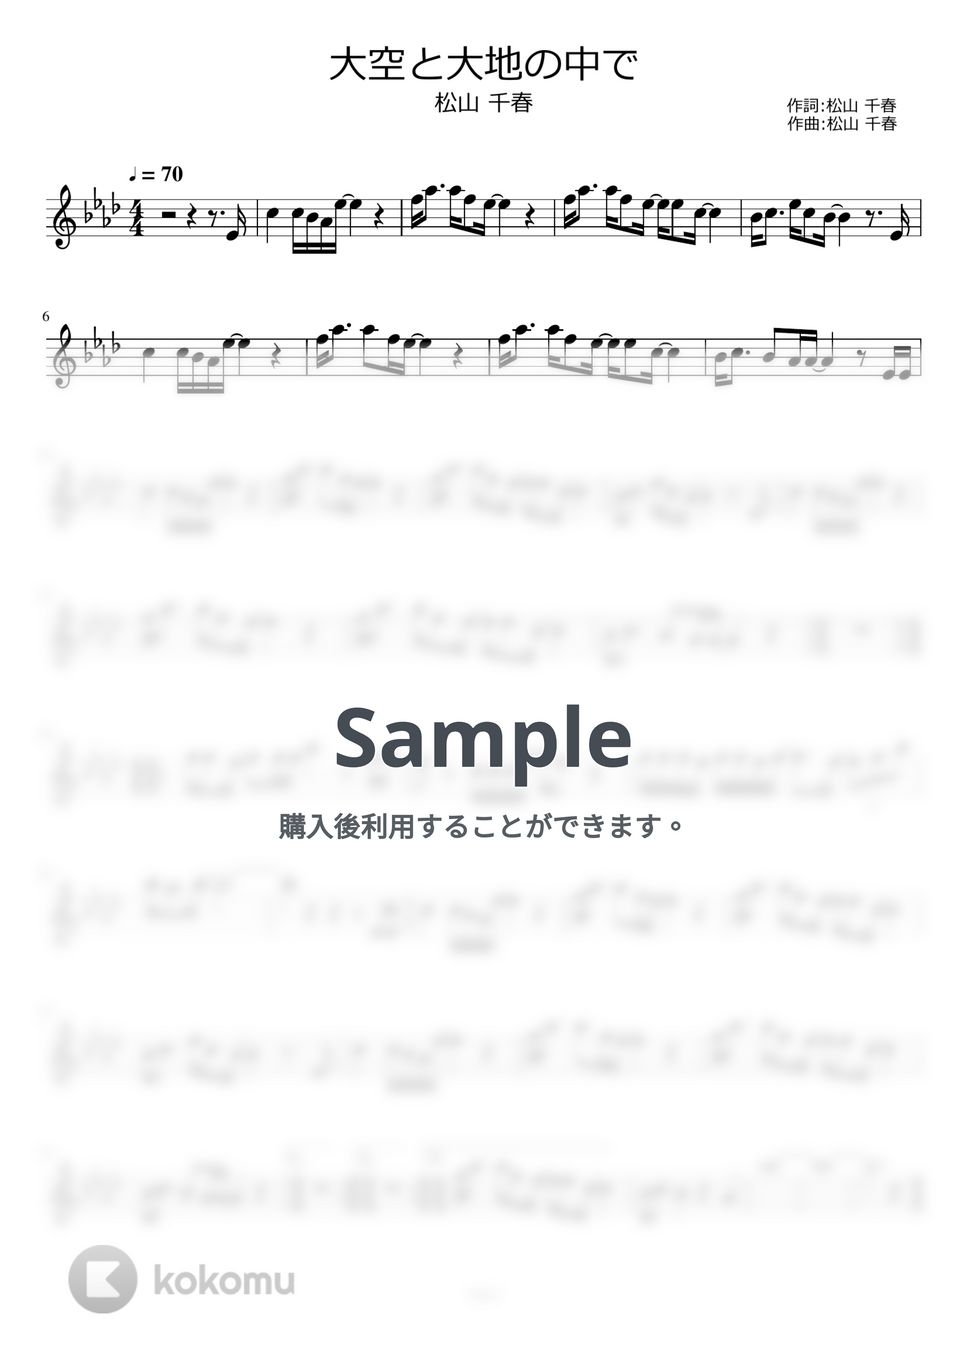 松山千春 - 大空と大地の中で by ayako music school